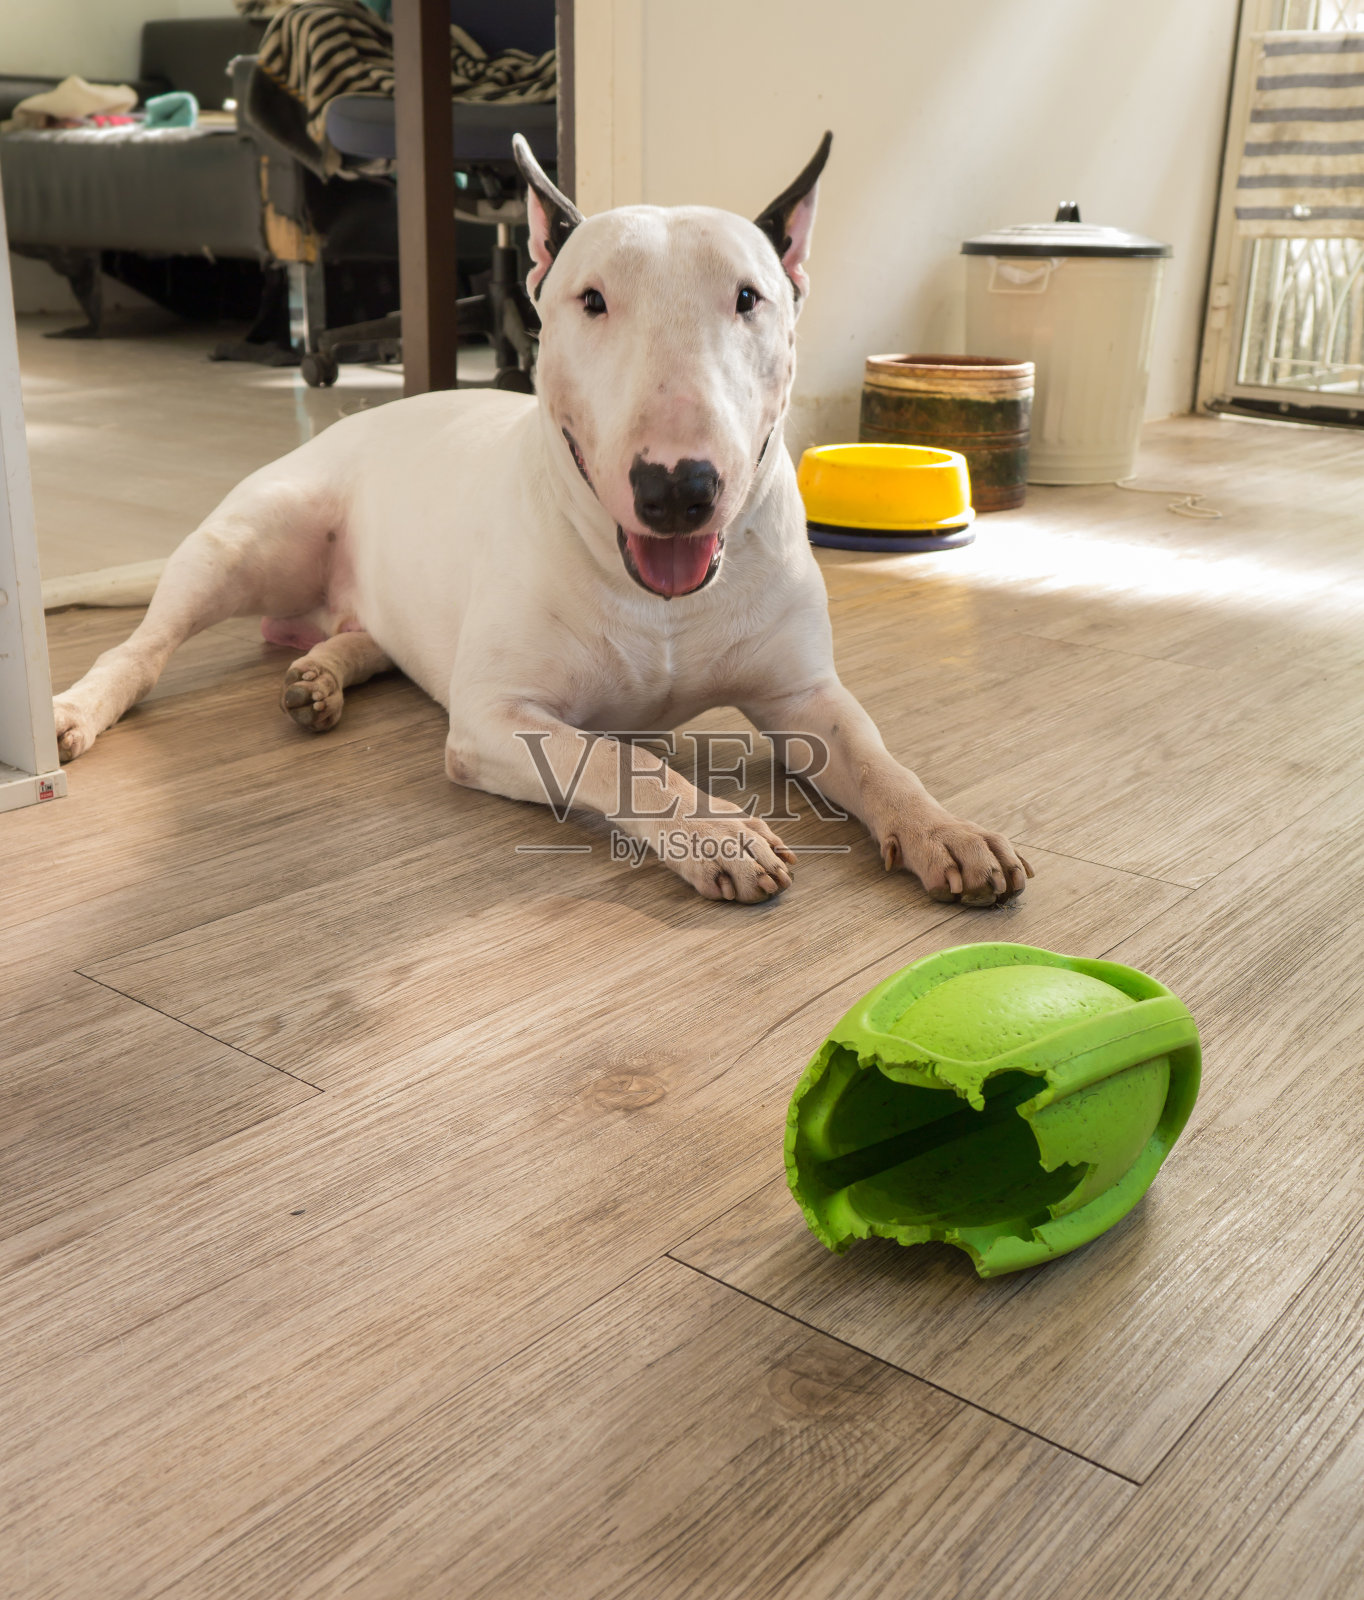 斗牛犬和咬橄榄球的橡胶狗玩具照片摄影图片